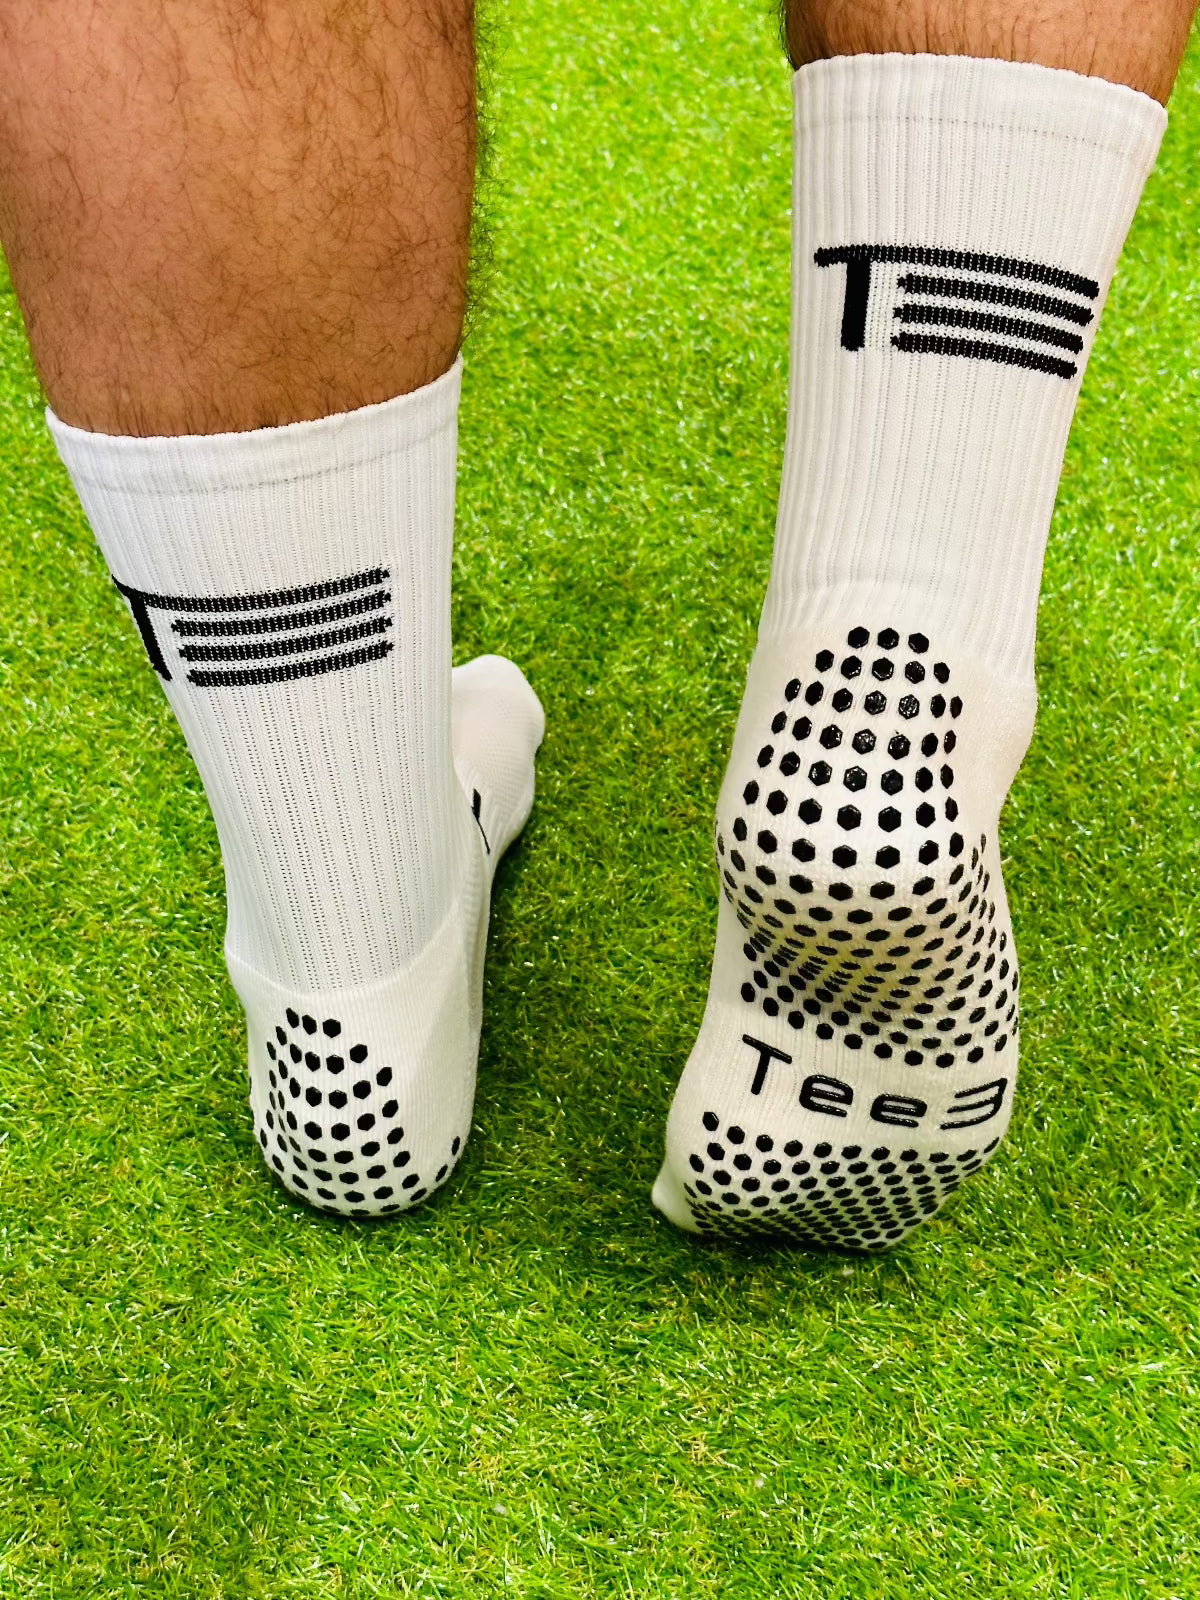 Socks - Tee 3 Goalkeeping